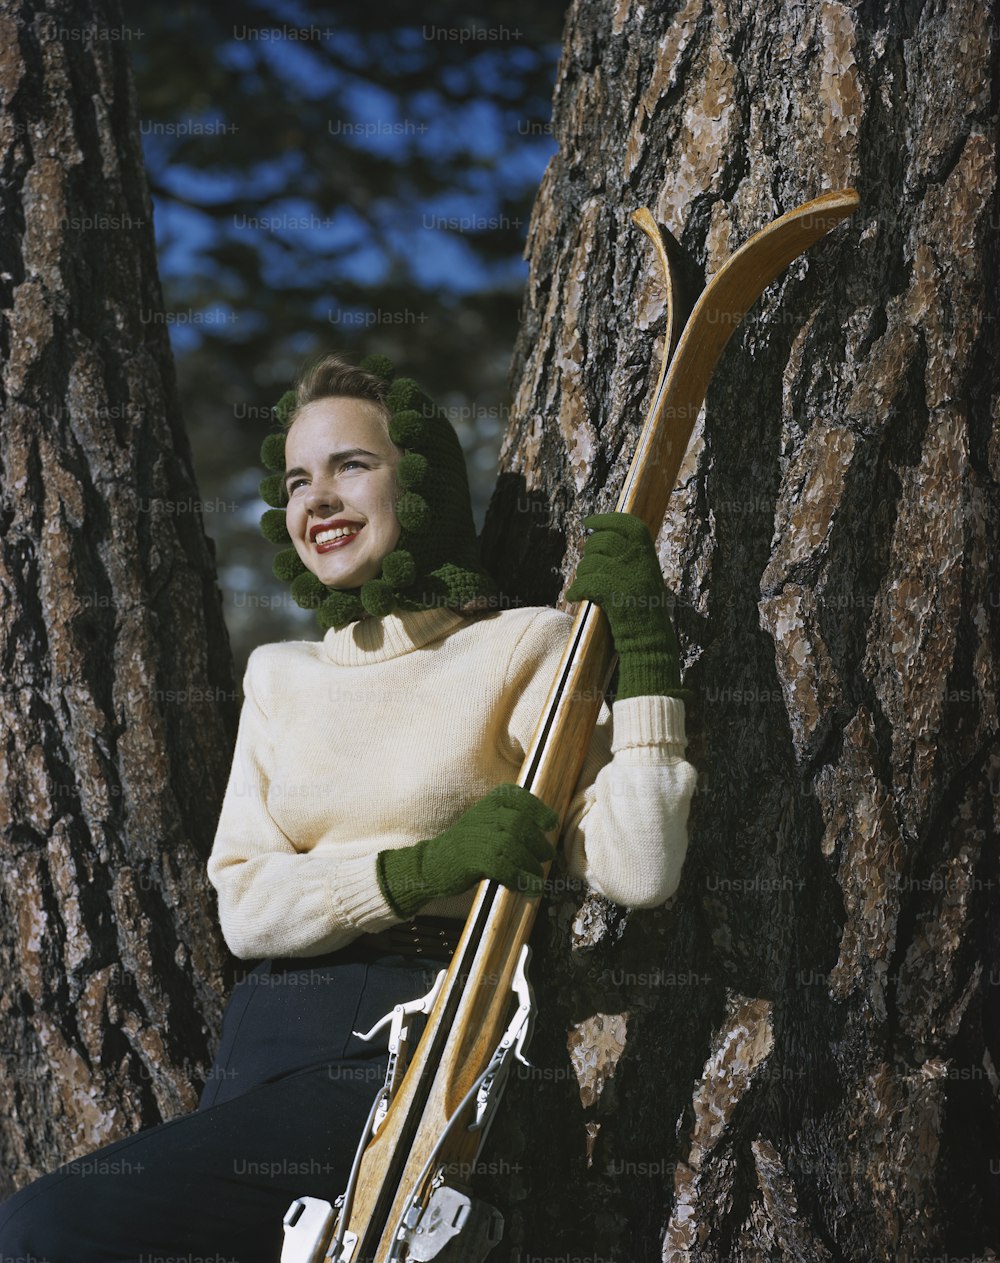 스키 한 켤레를 들고 나무에 앉아 있는 여자